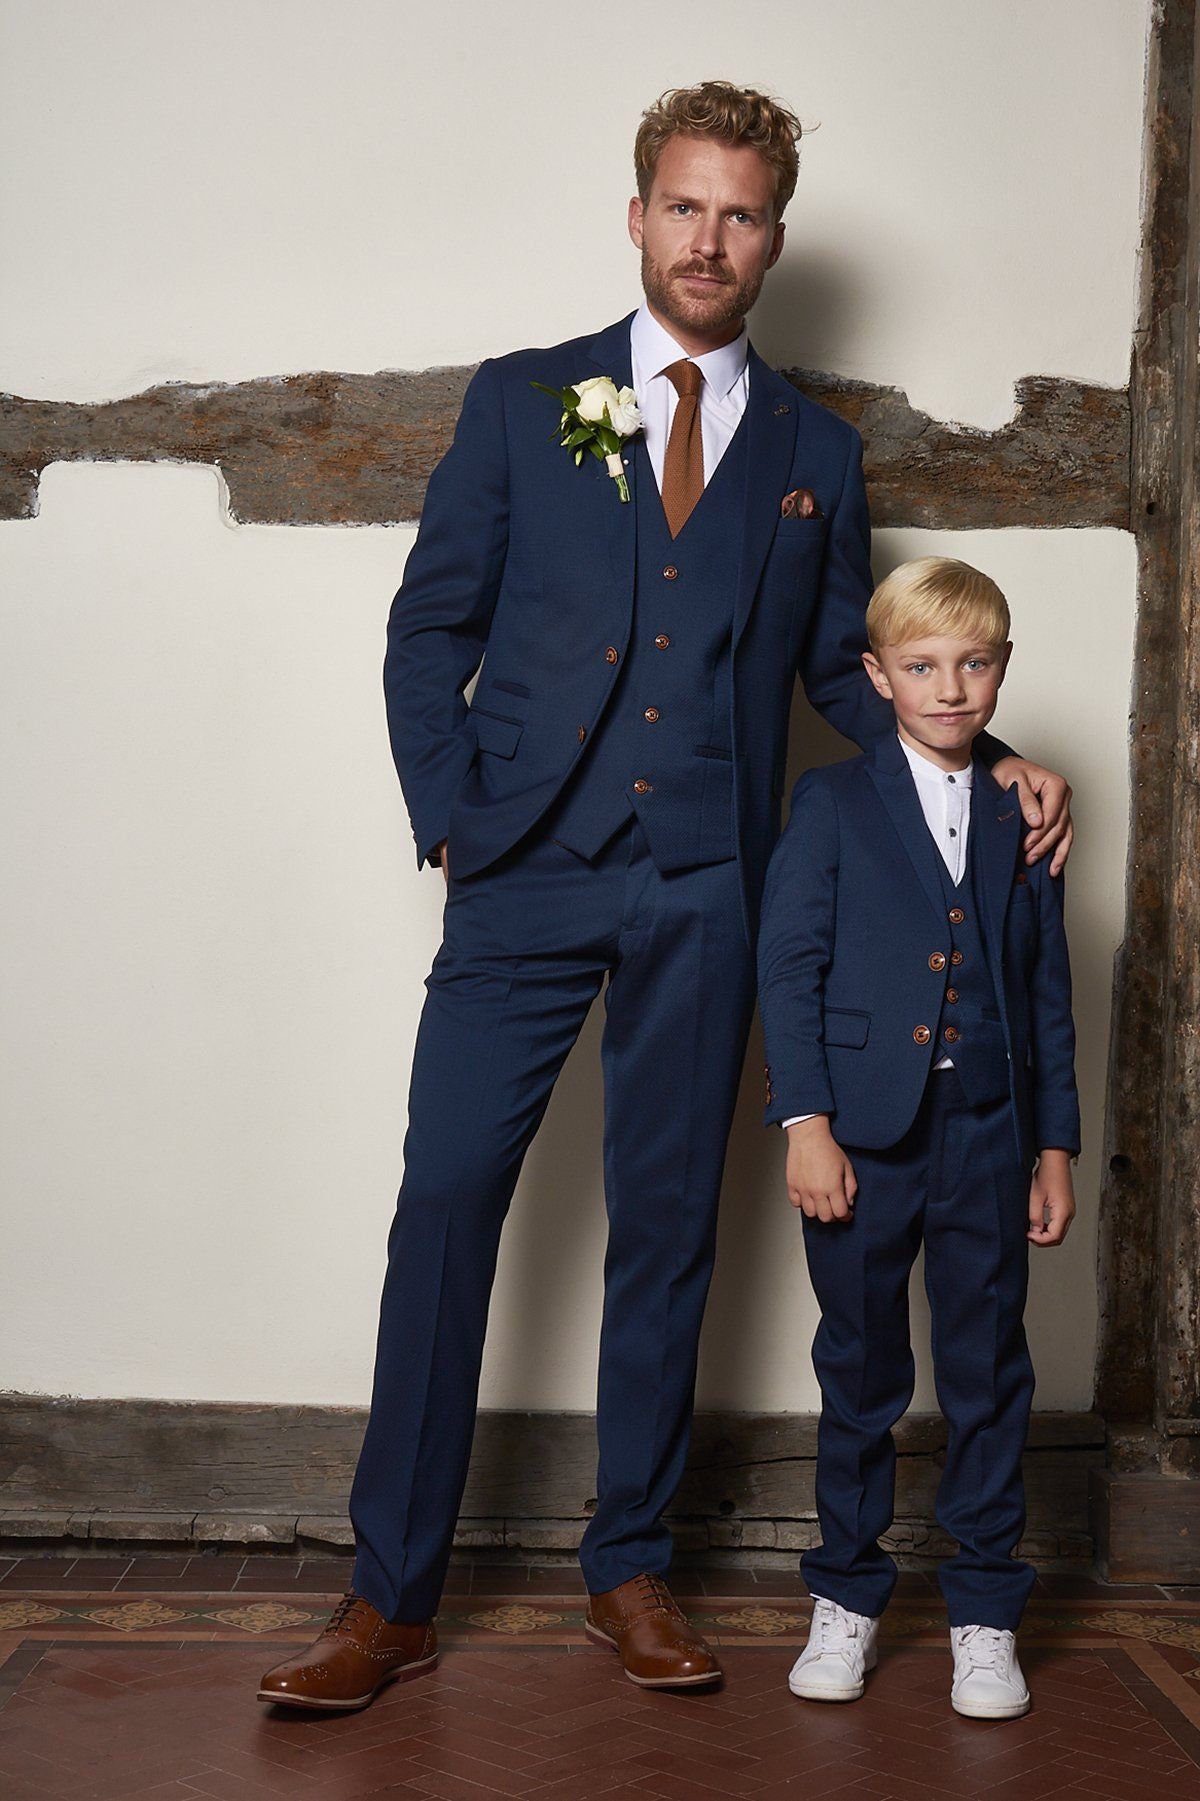 Man Linen Blue Wedding Suit-summer Suit-wedding Suits-dinner Suit-groomsmen  Suit-slim Fit Suit-tuxedo Suit-customized Suit-groom Suit 